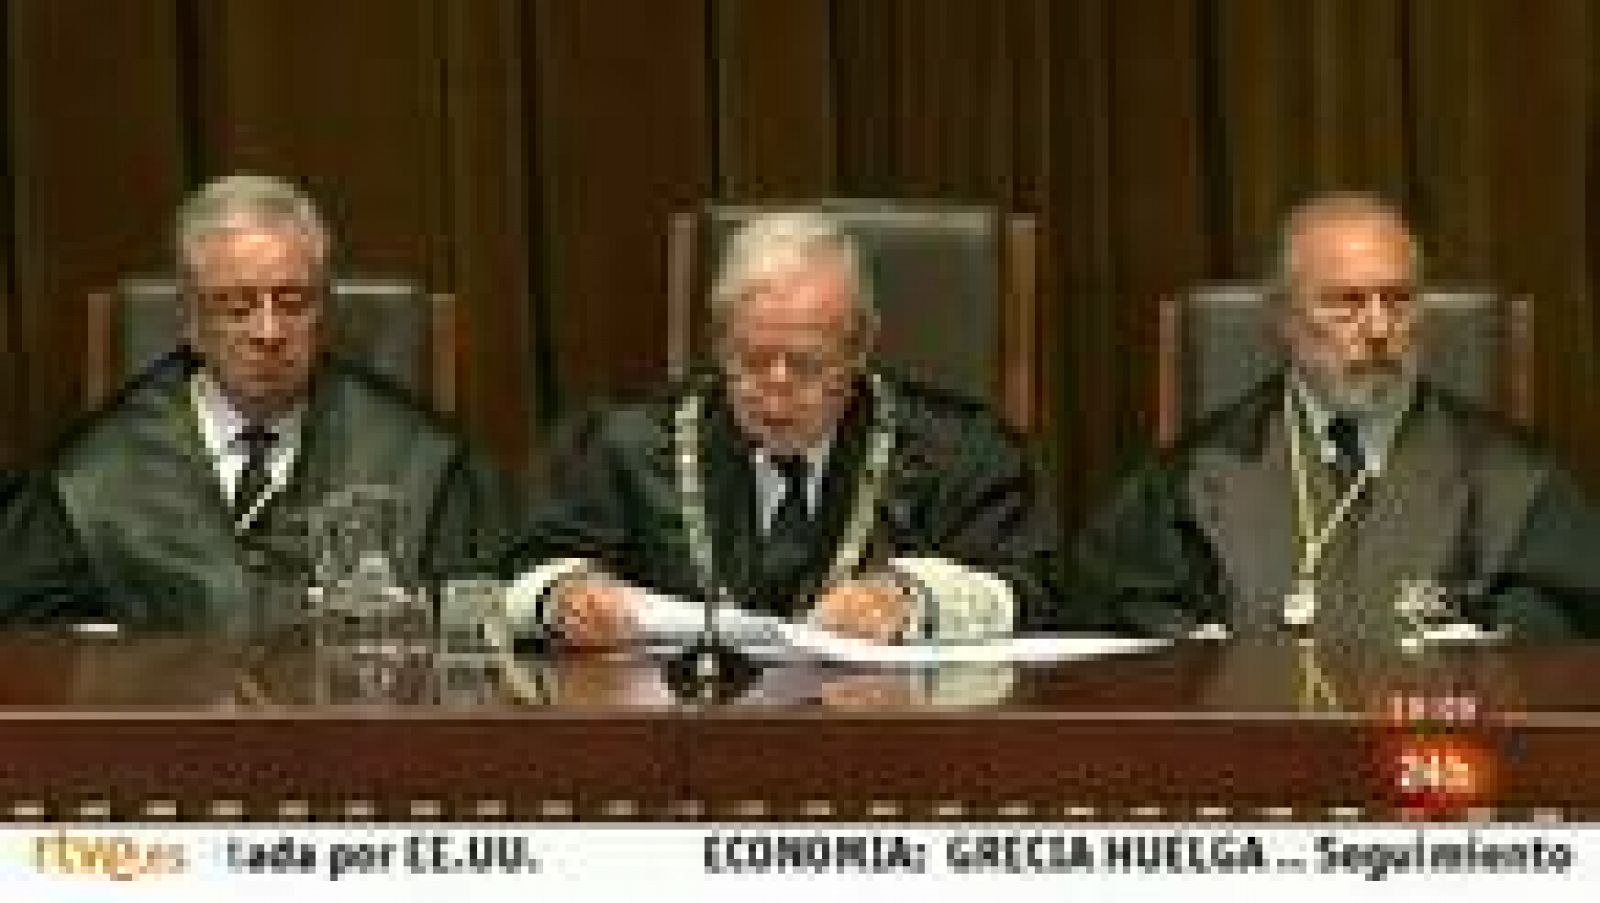 El jurista y magistrado Pascual Sala, hasta ahora presidente del Tribunal Constitucional, se ha despedido del cargo defendiendo la independencia del tribunal de garantías frente a los criterios de conveniencia política.